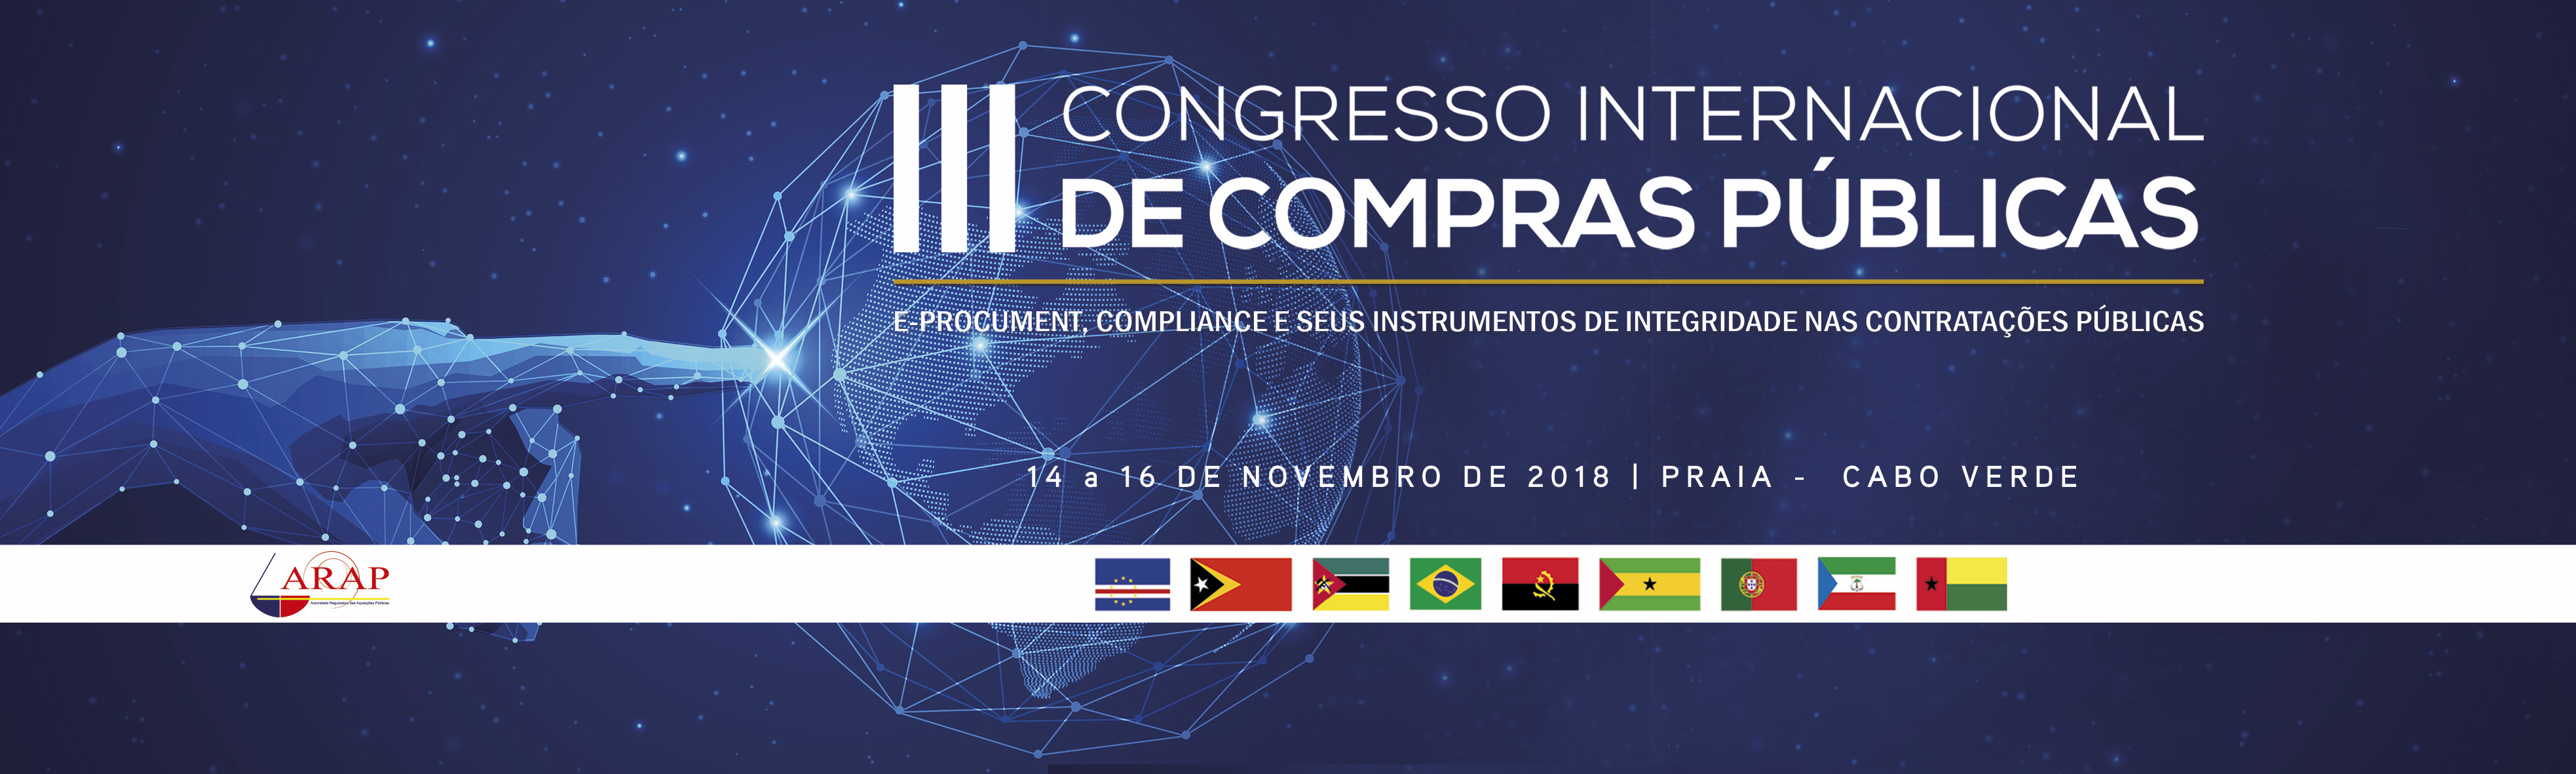 E-Procurement e seus Instrumentos de Integridade nas Contratações Públicas é lema do III Congresso Internacional de Compras Públicas